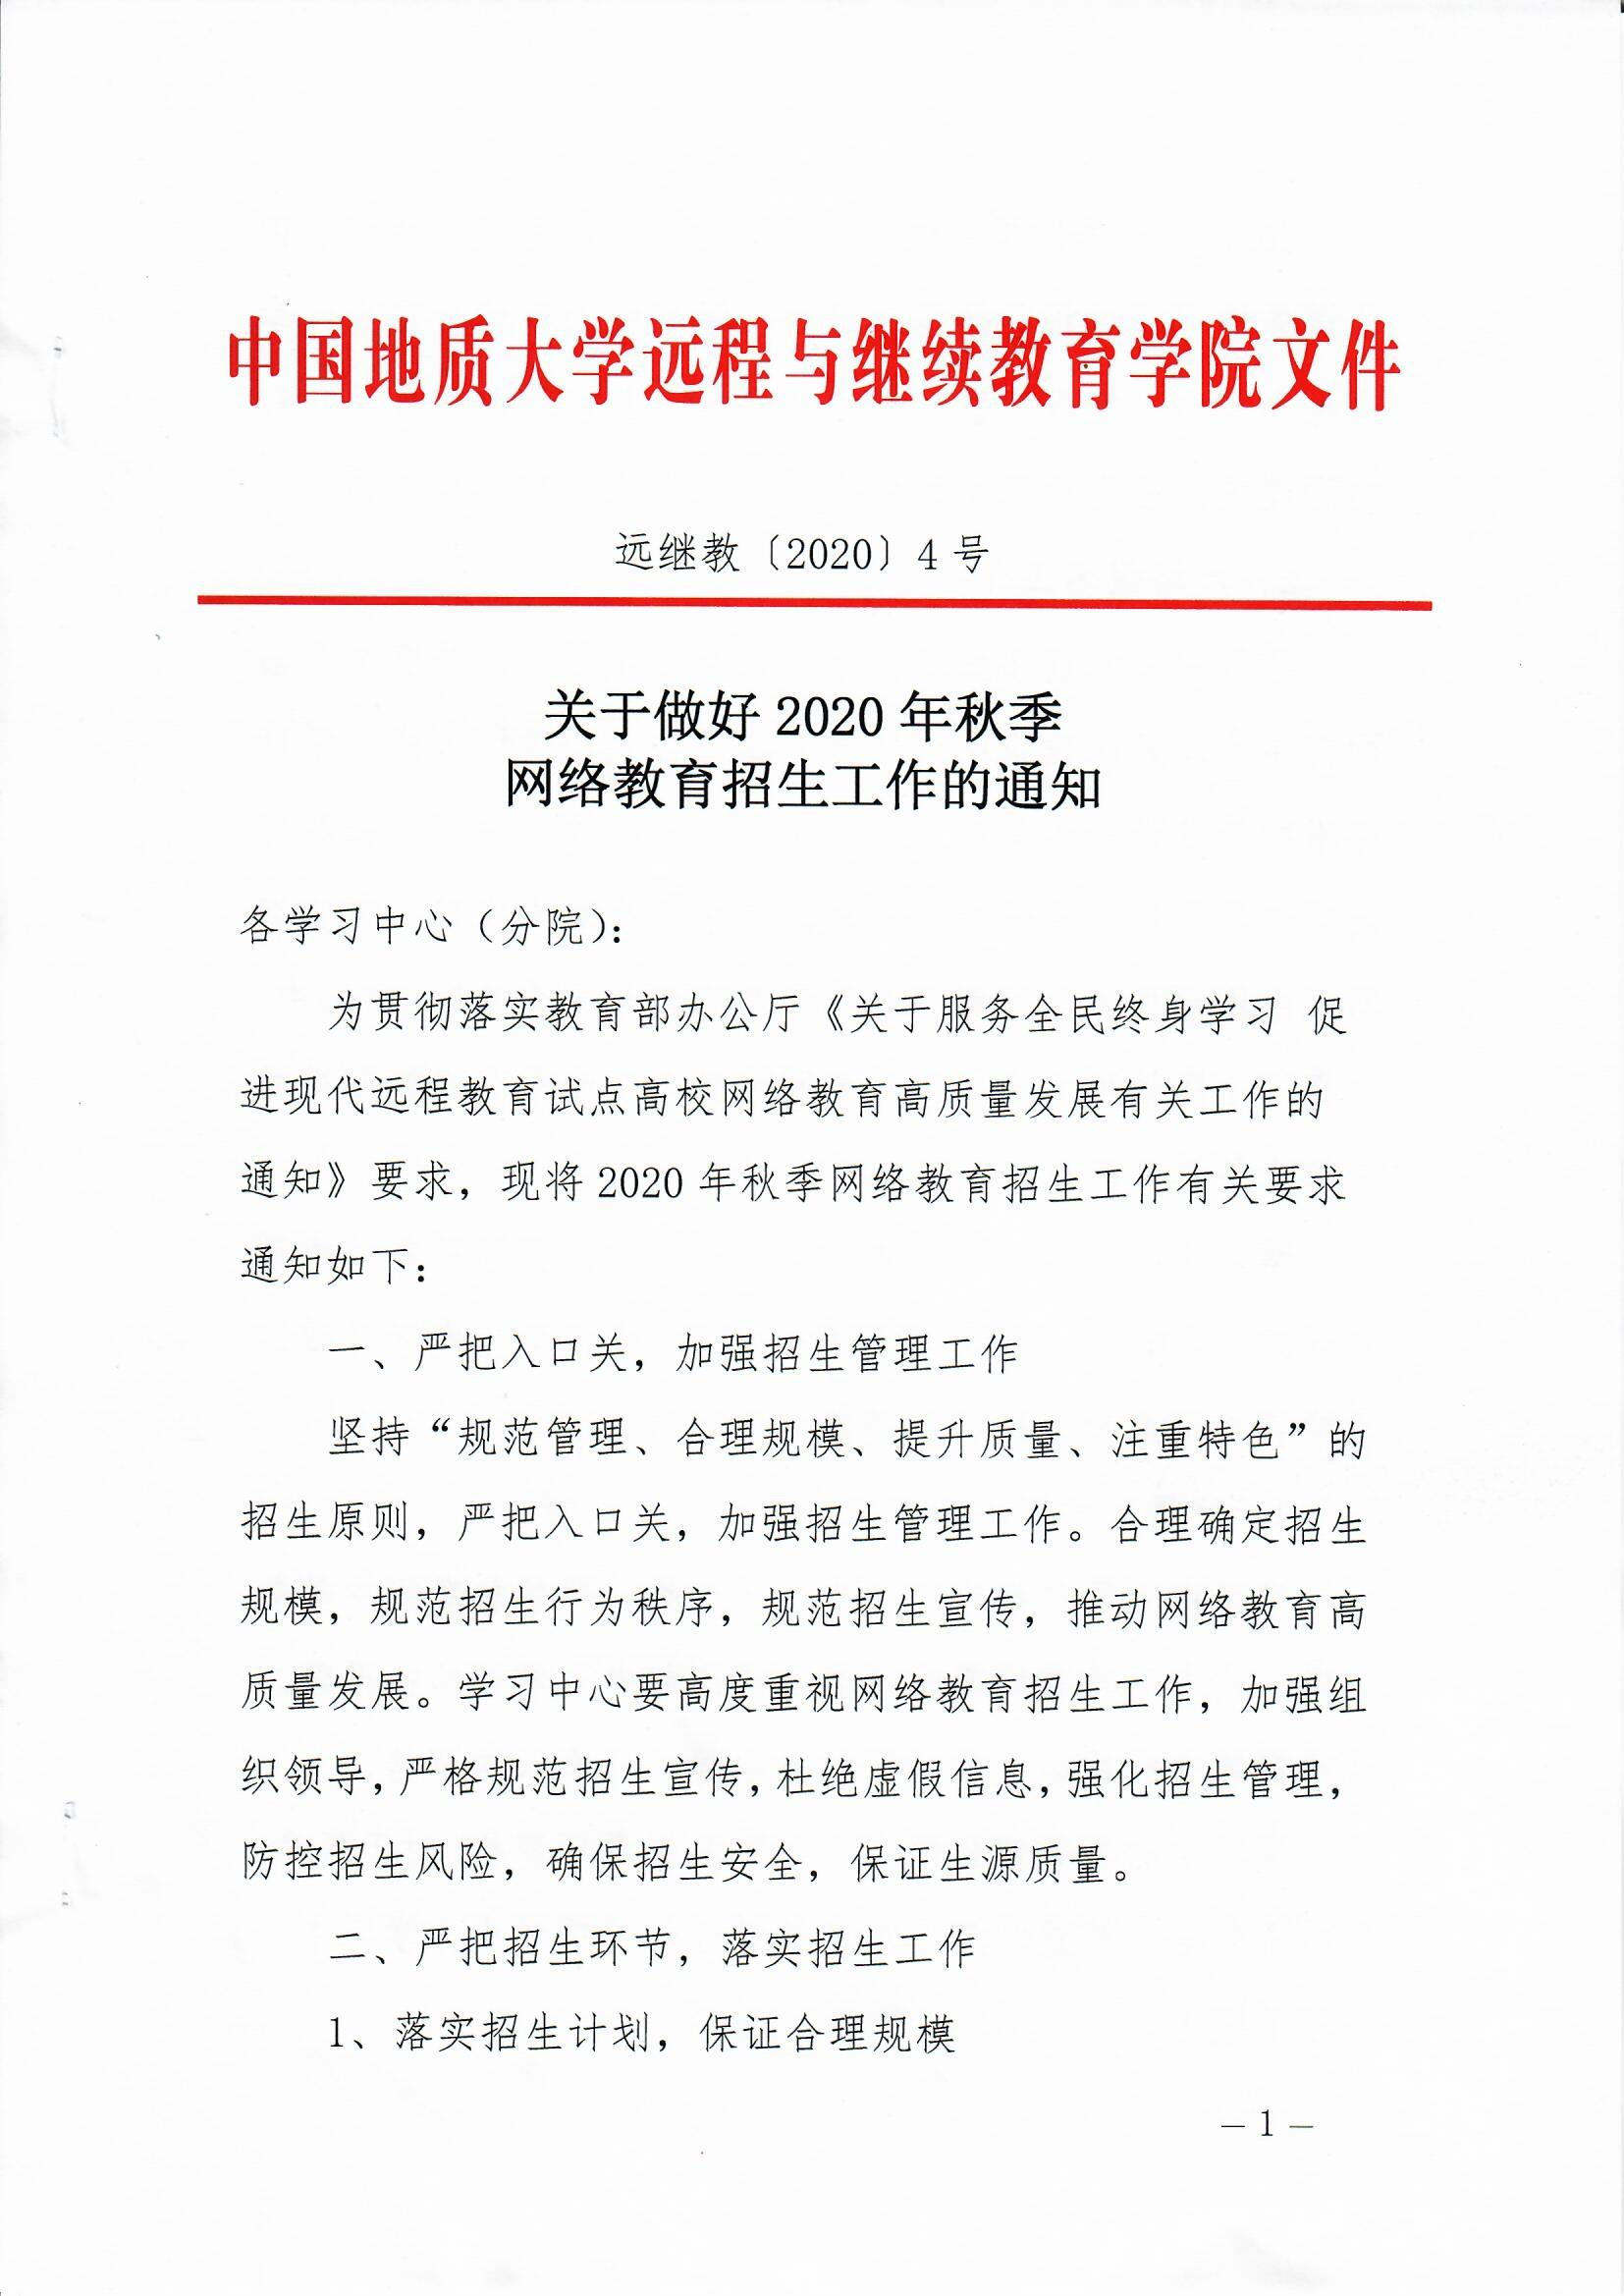 中国地质大学2020年秋季网络教育招生工作的通知